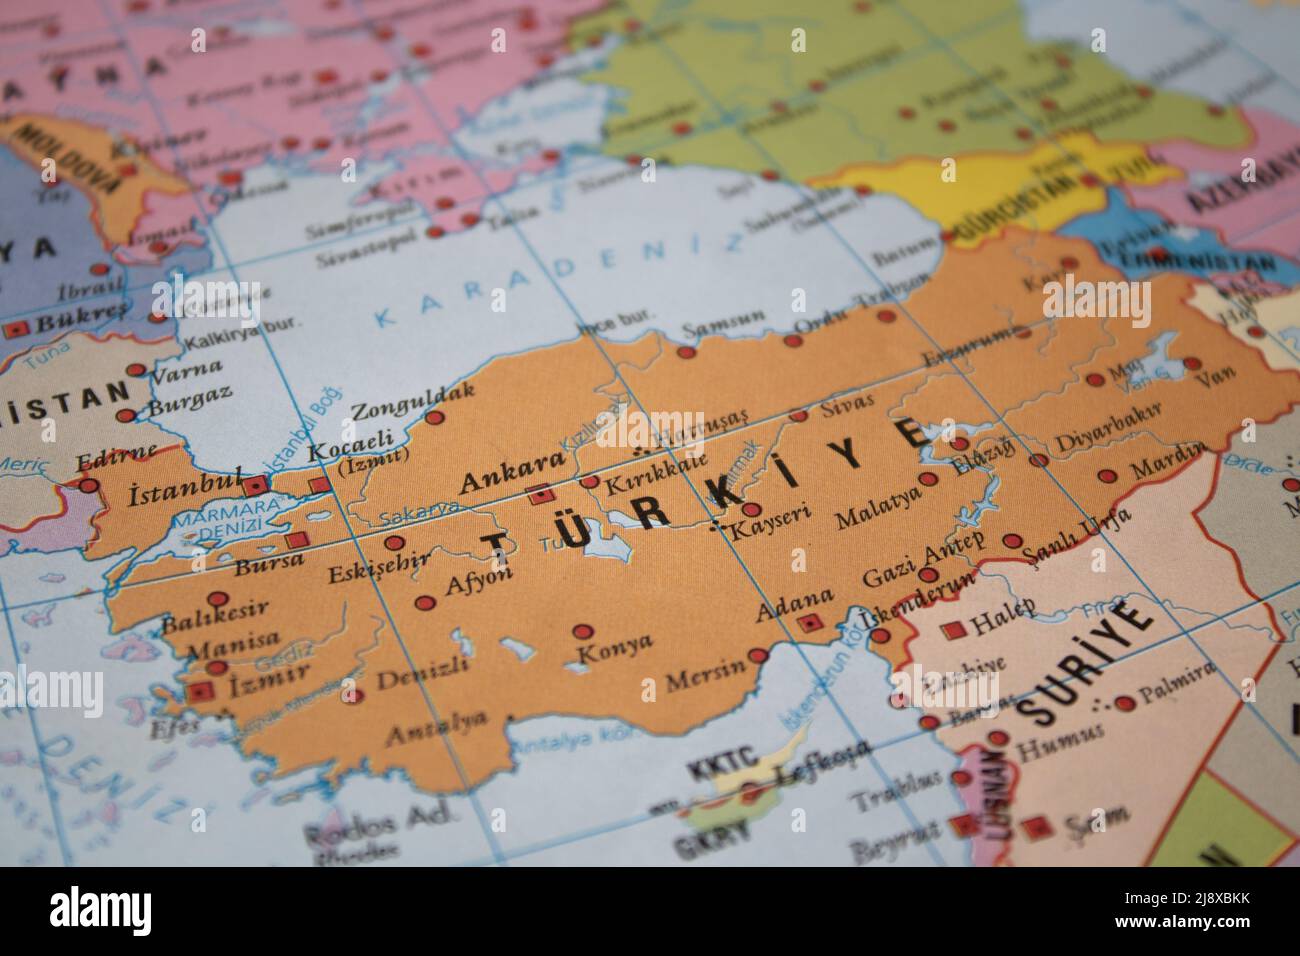 Focus on Turkey on the map Stock Photo